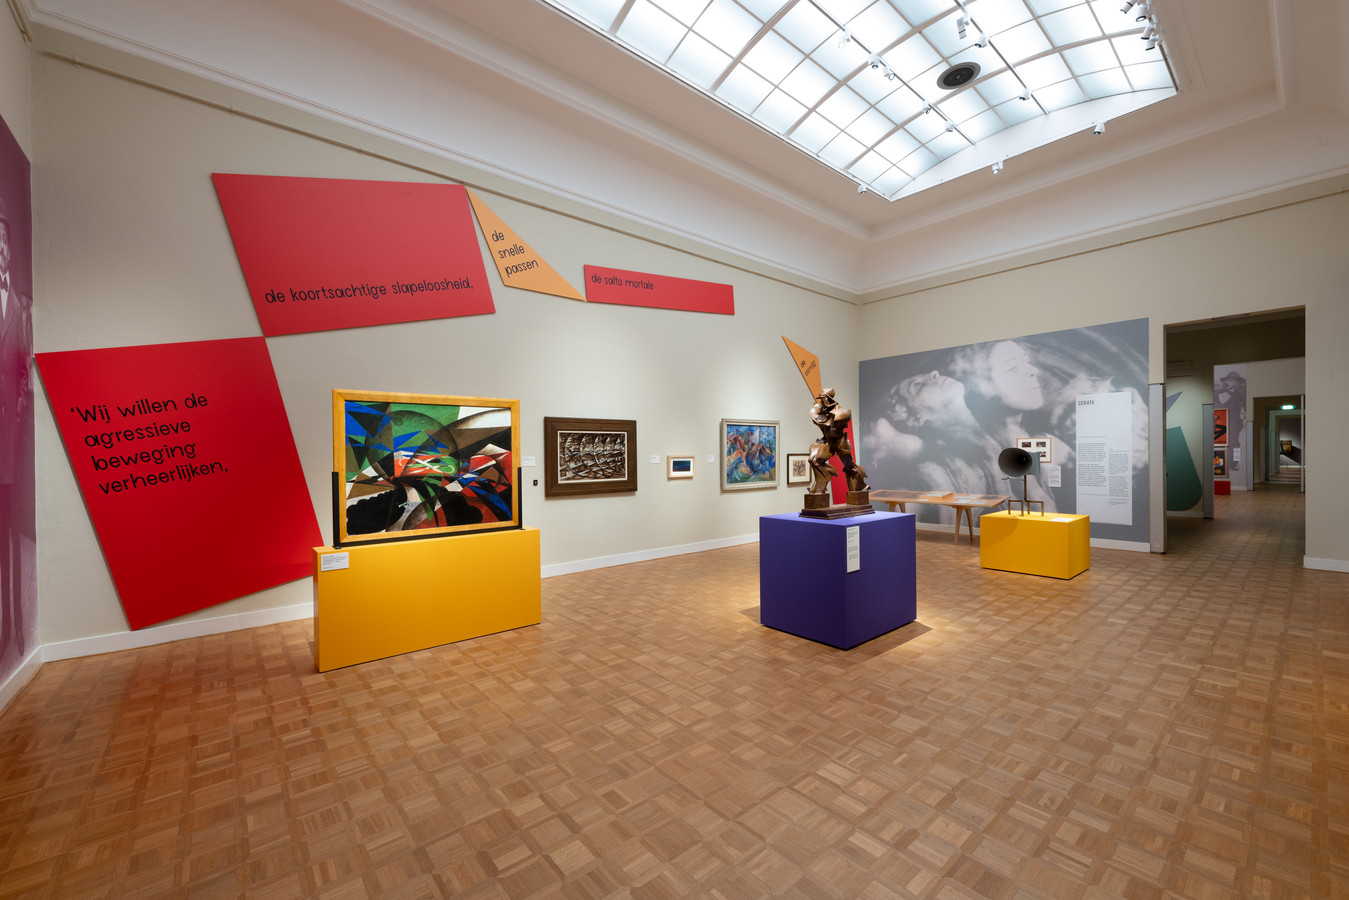 Beeld van de tentoonstelling ‘Marinetti en het futurisme’ zoals die nu is te zien in het Rijksmuseum Twenthe.